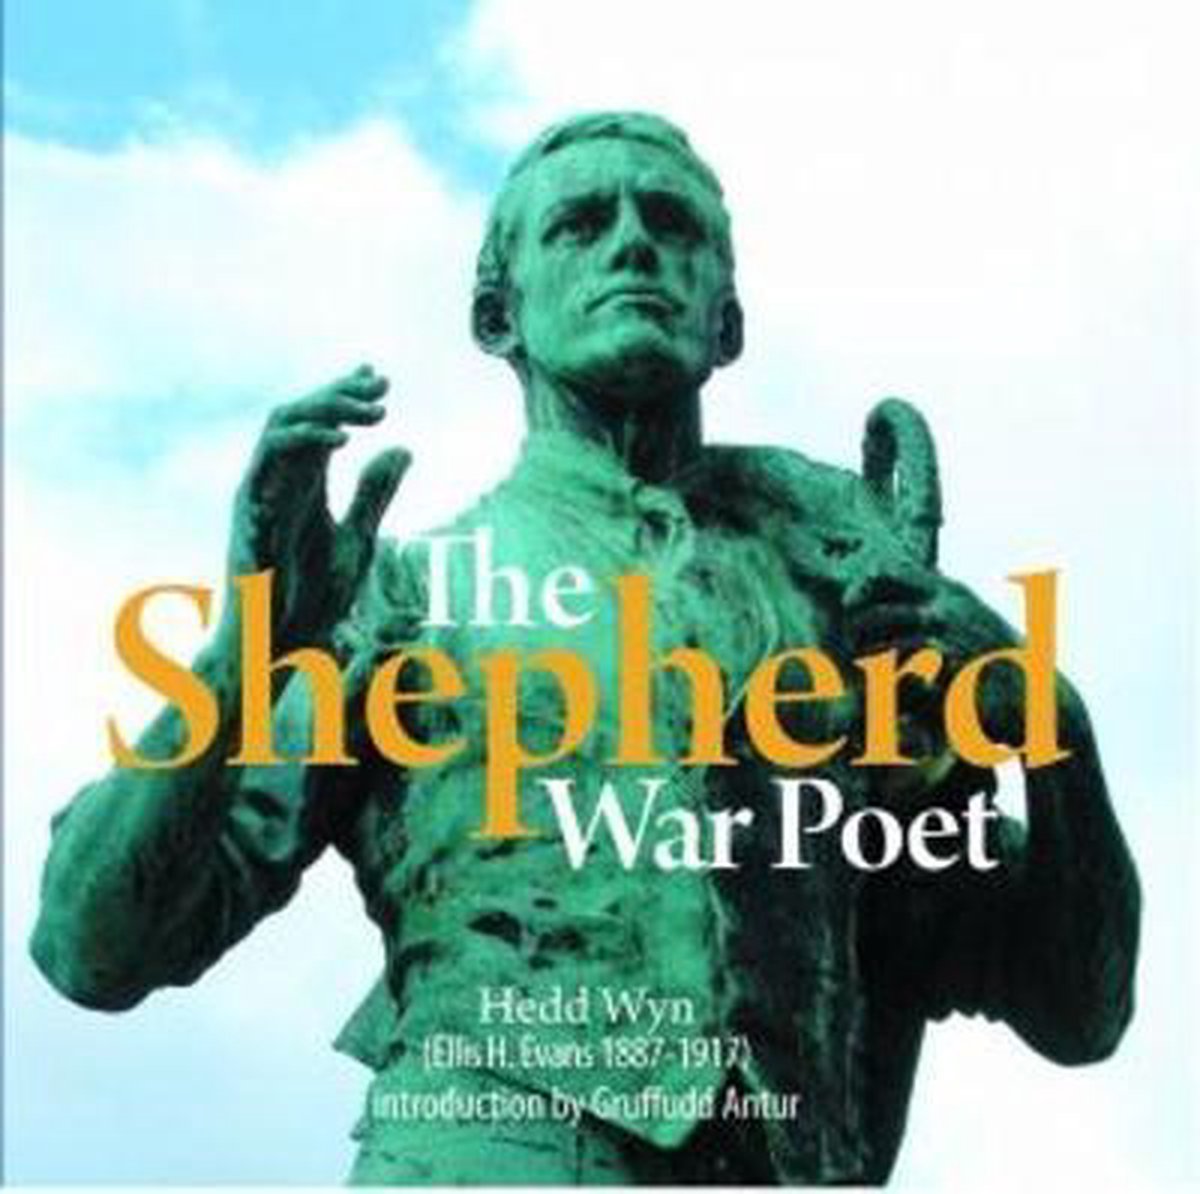 Compact Wales: Shepherds War Poet - Hedd Wyn